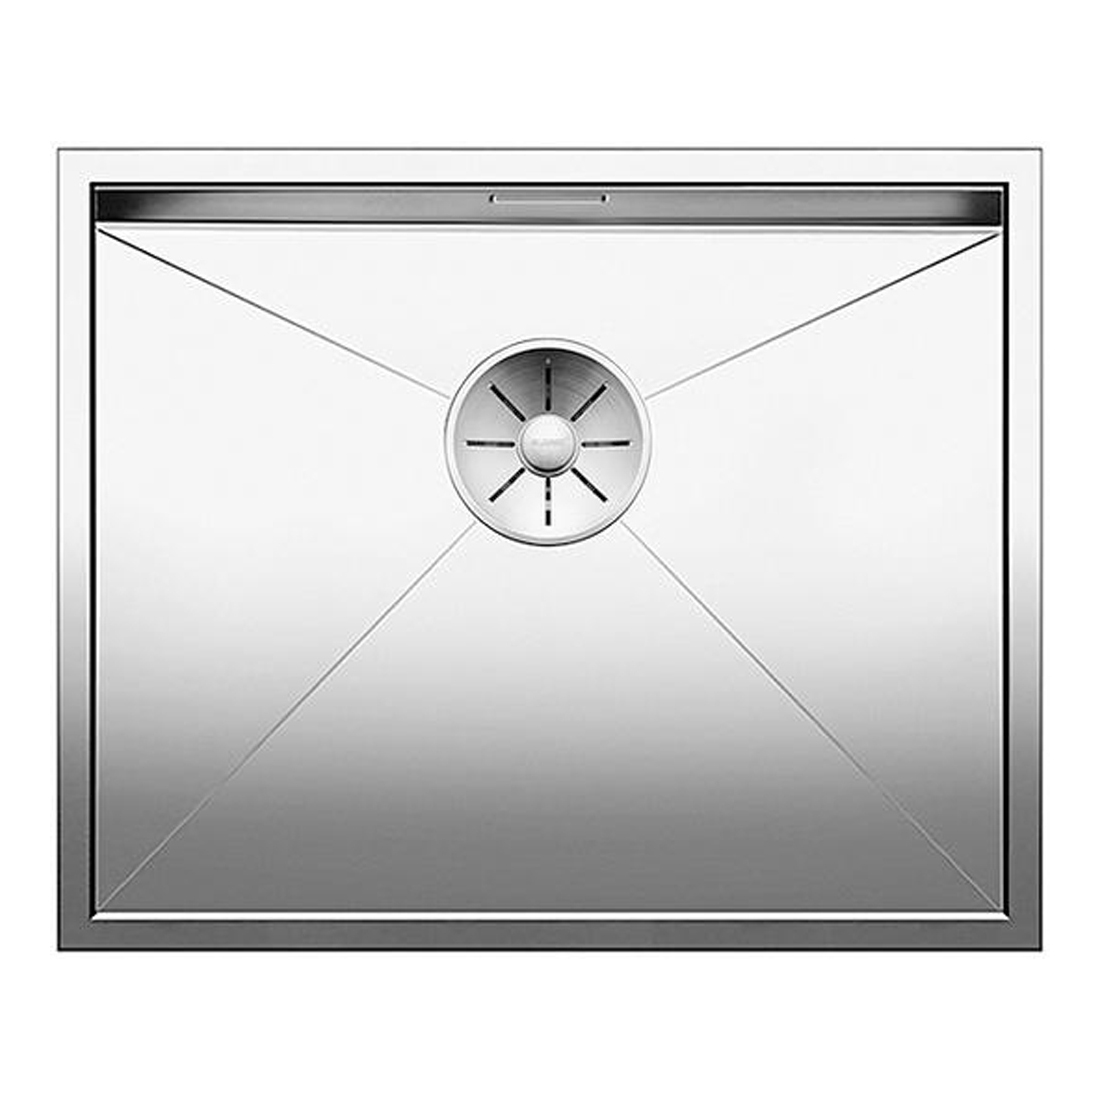 Кухонная мойка Blanco Zerox 500-U зеркальная полировка кухонная мойка blanco claron 550 if зеркальная полировка